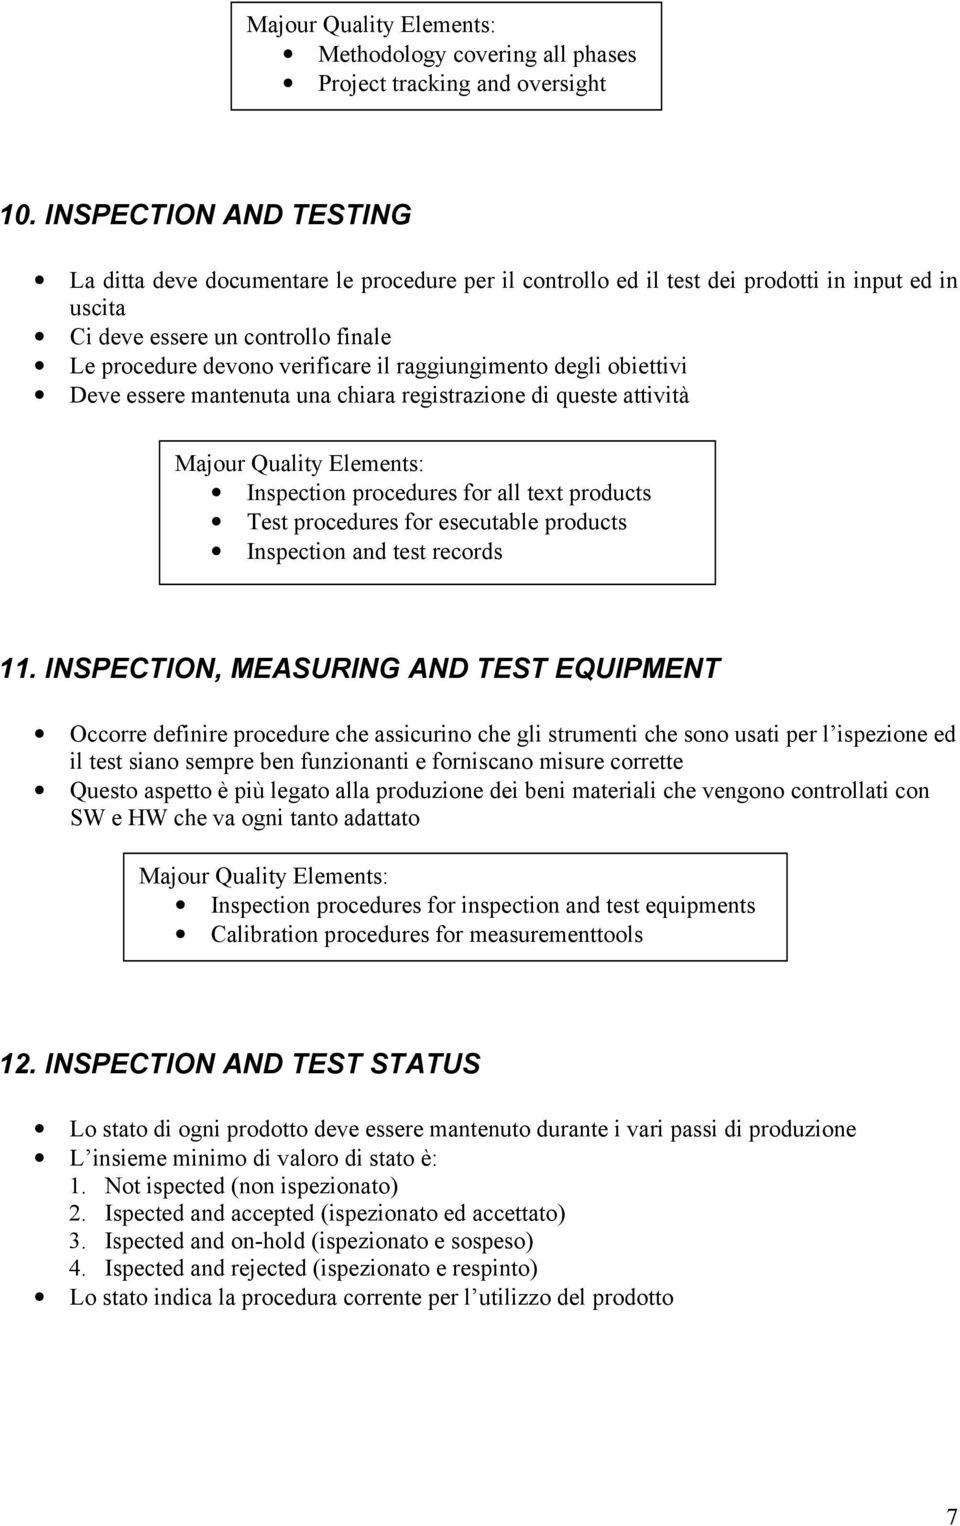 raggiungimento degli obiettivi Deve essere mantenuta una chiara registrazione di queste attività Inspection procedures for all text products Test procedures for esecutable products Inspection and